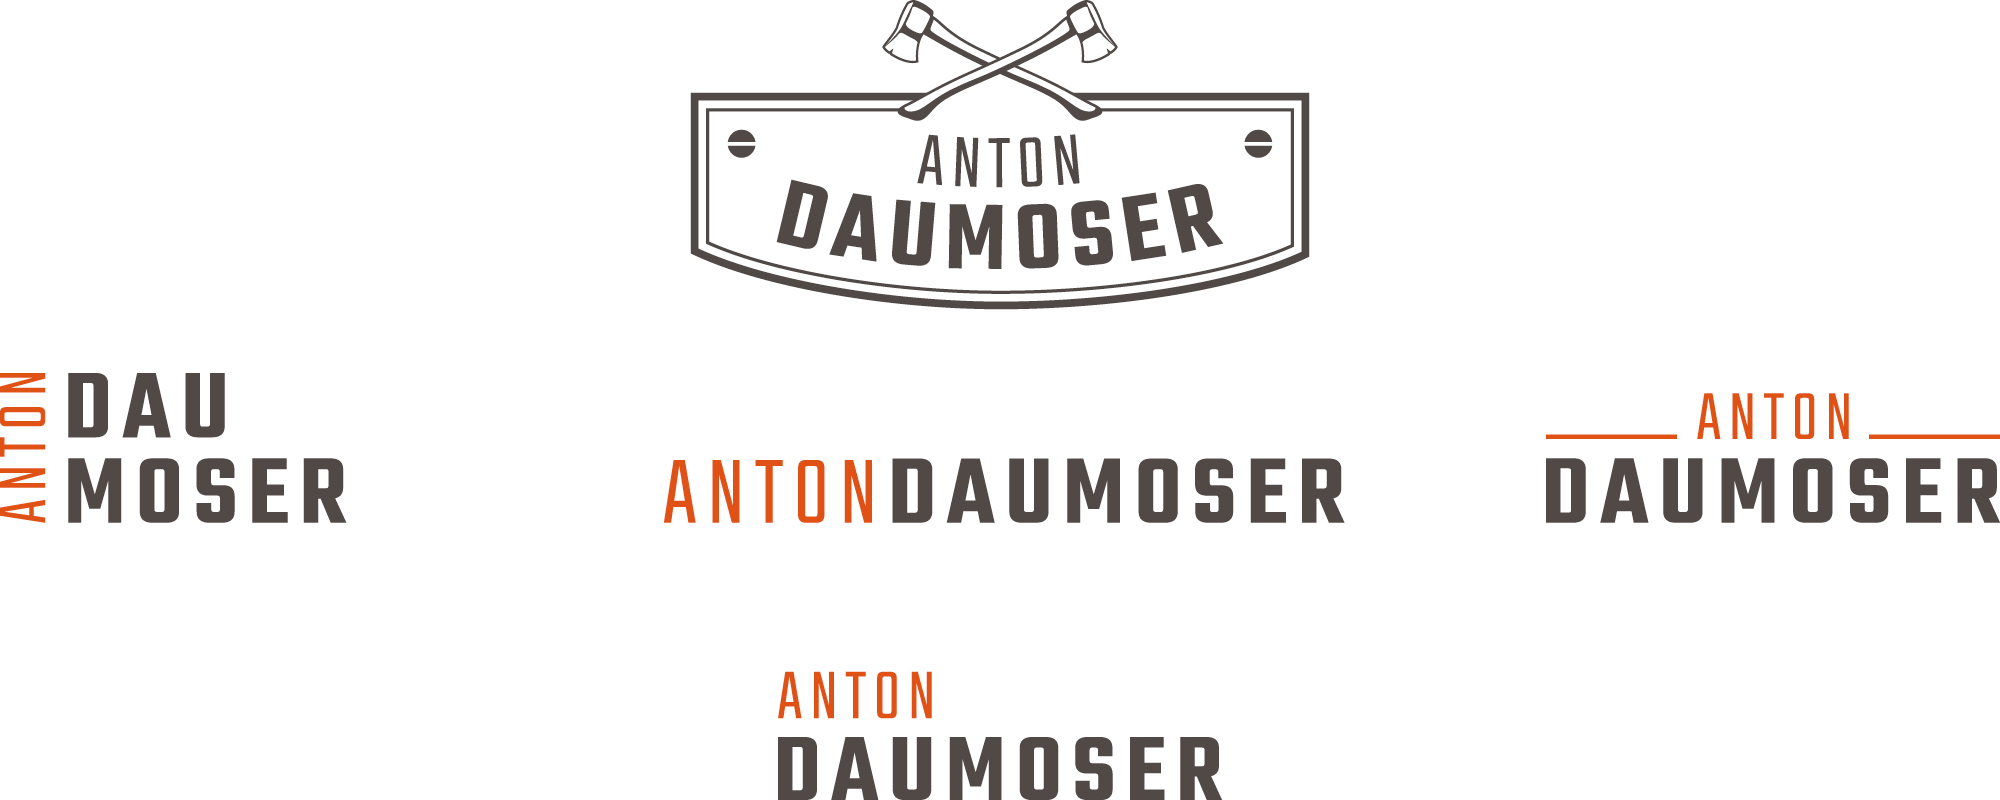 Master_Referenzen_Anton-Daumoser_Webcase4